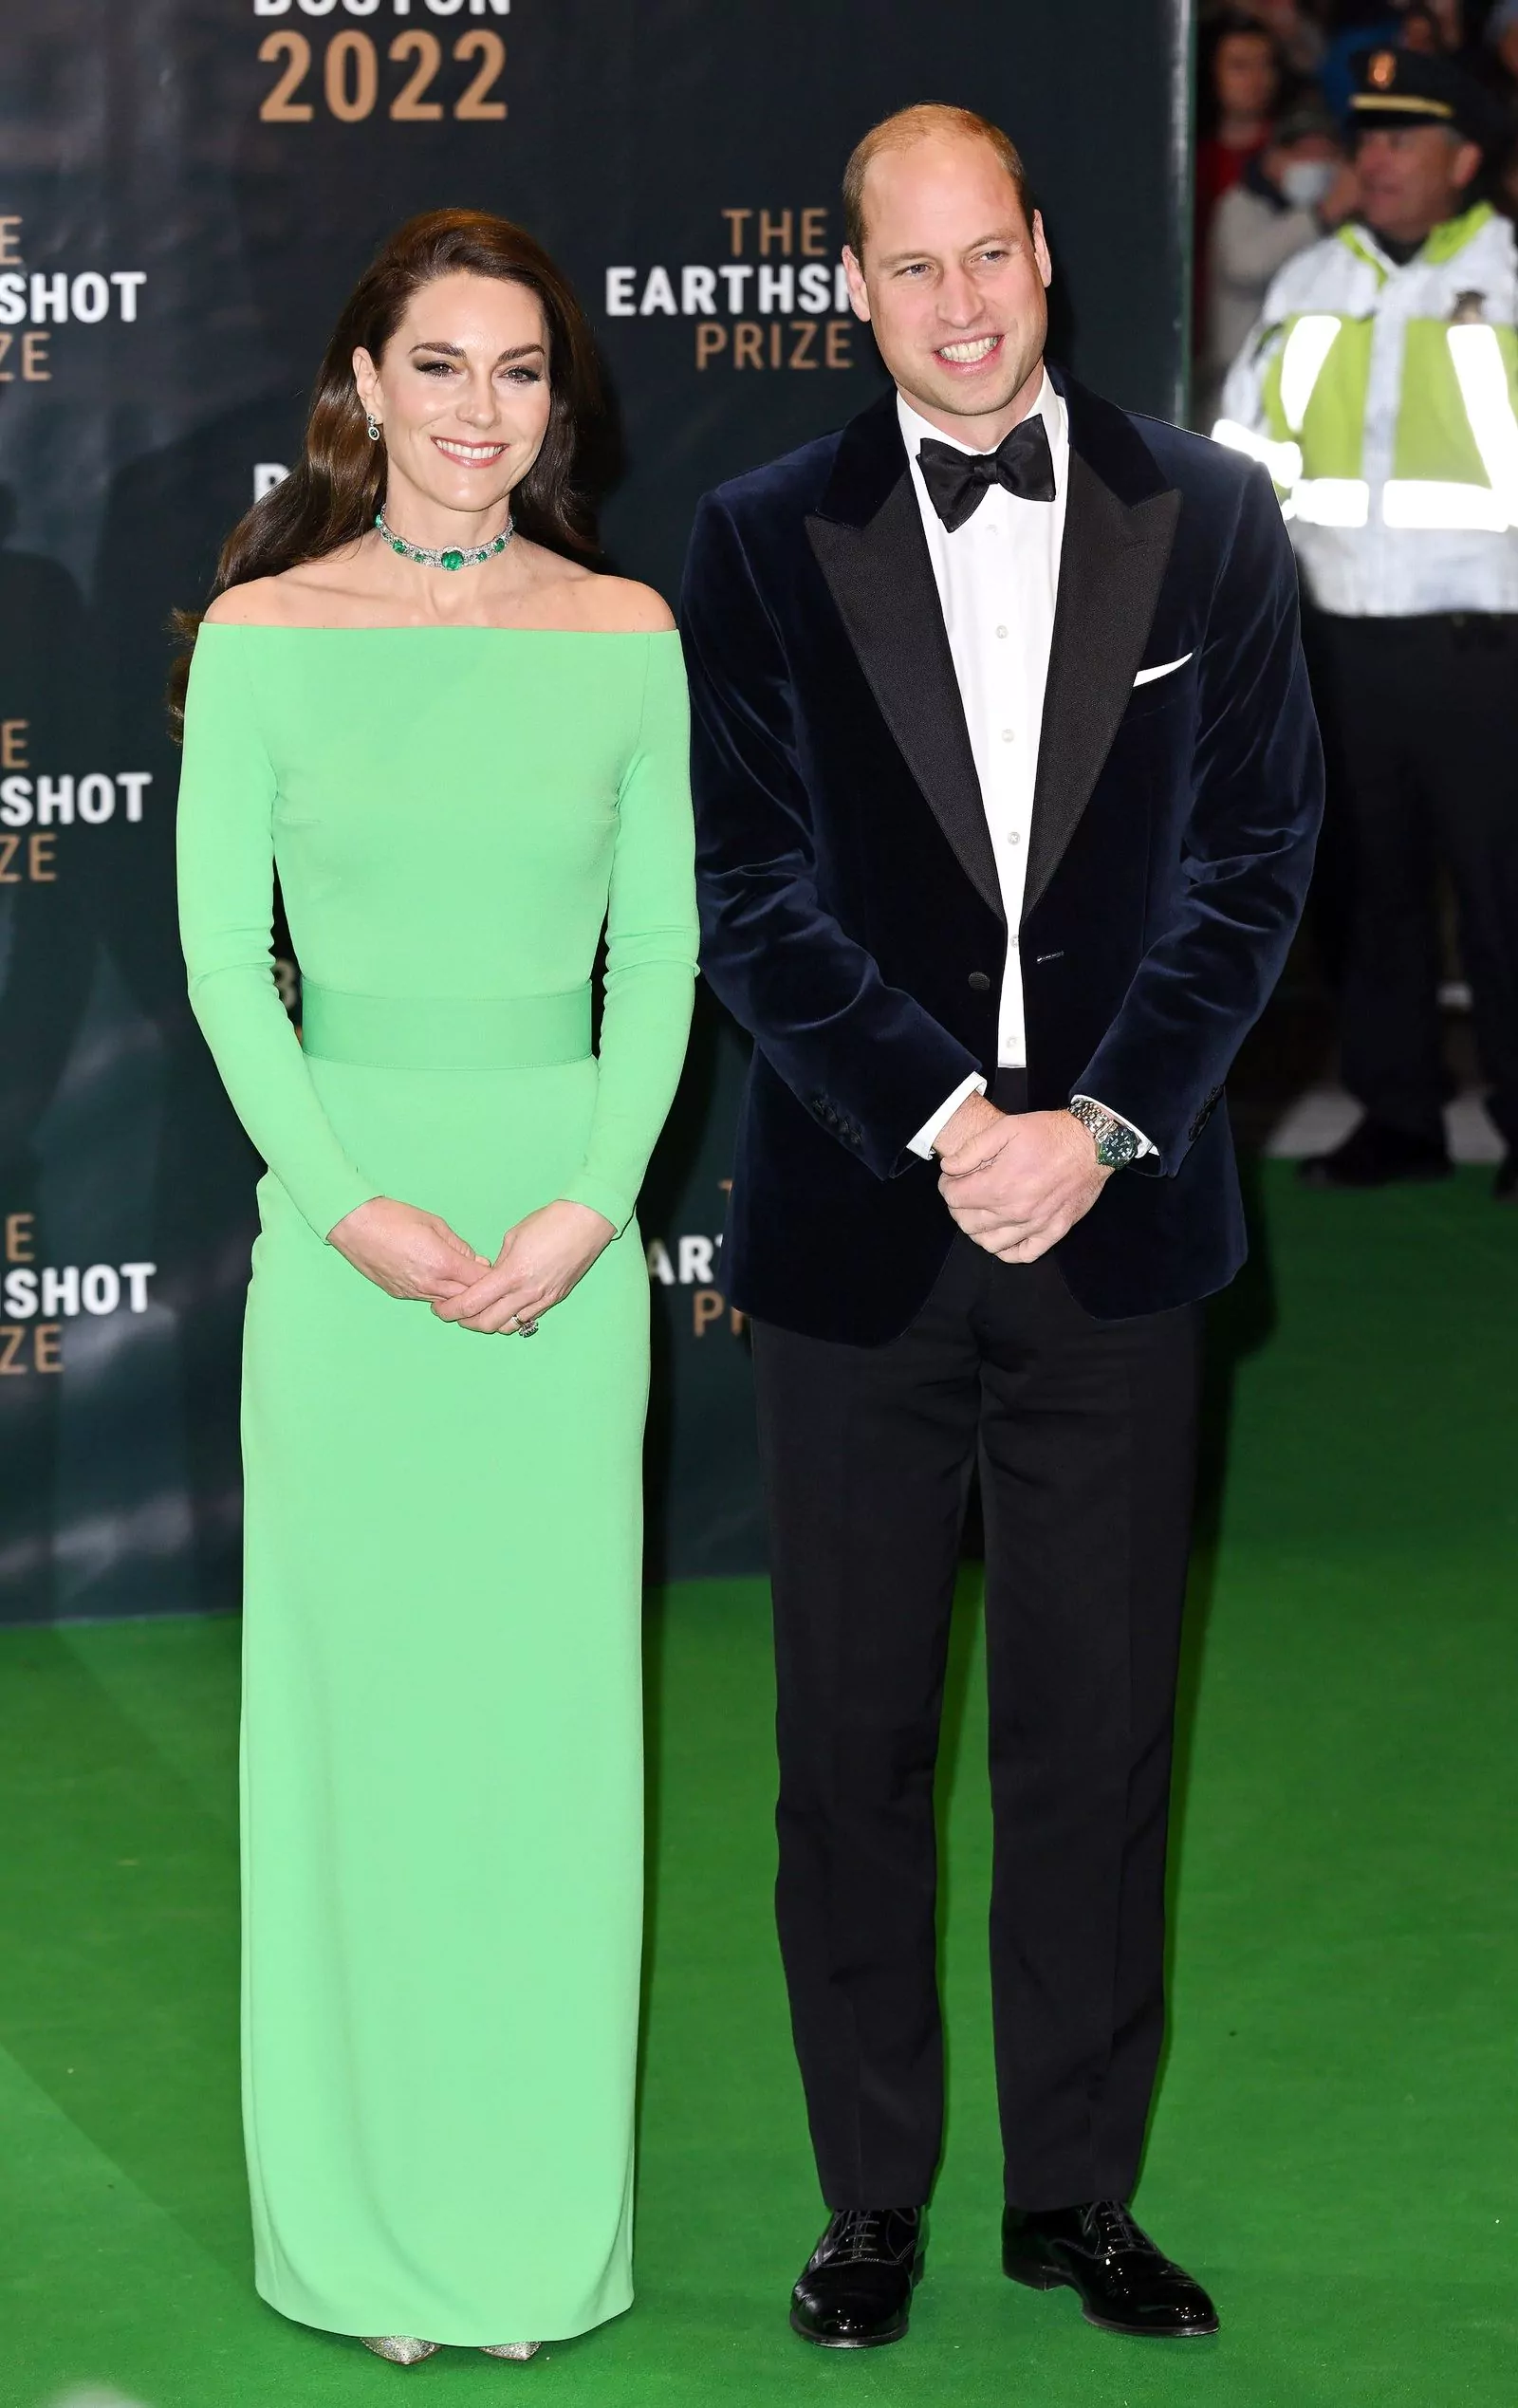 Принц Уильям и принцесса Уэльская Кэтрин на церемонии вручения премии Earth shot Prize 2022 в Бостоне, 2 декабря 2022 г.